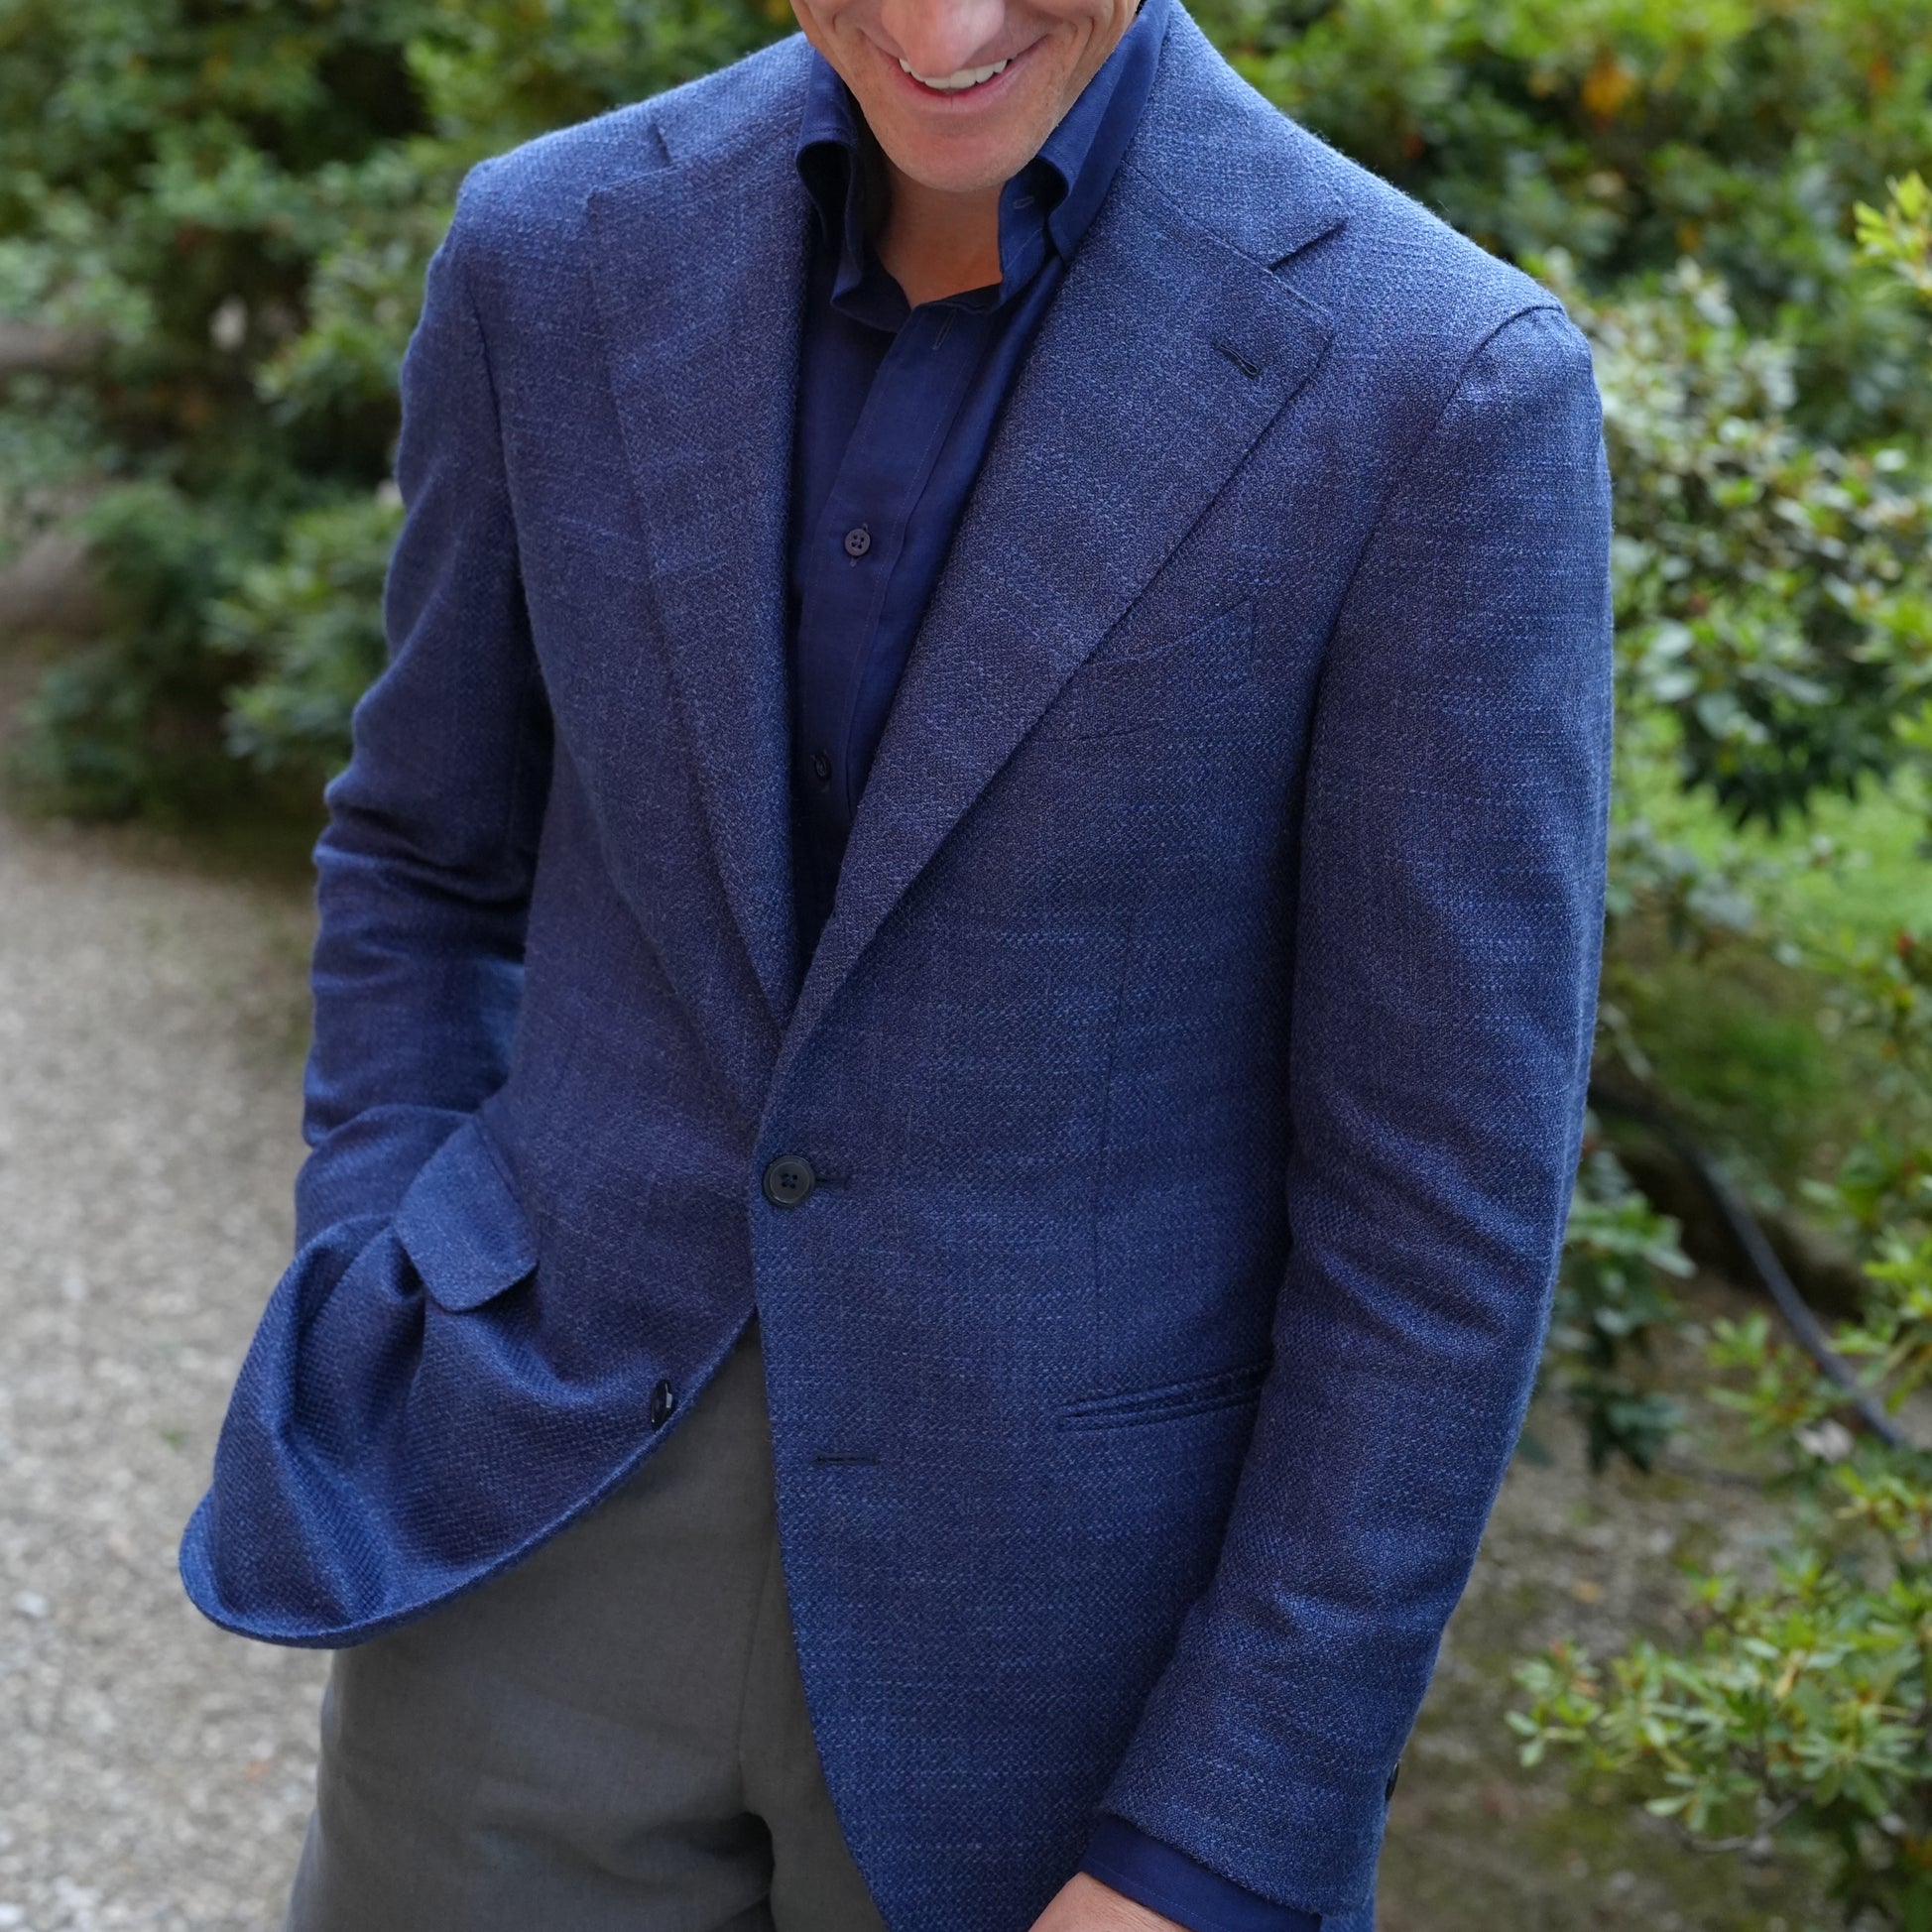 Derek in blue summer jacket, gray linen trousers and navy linen shirt